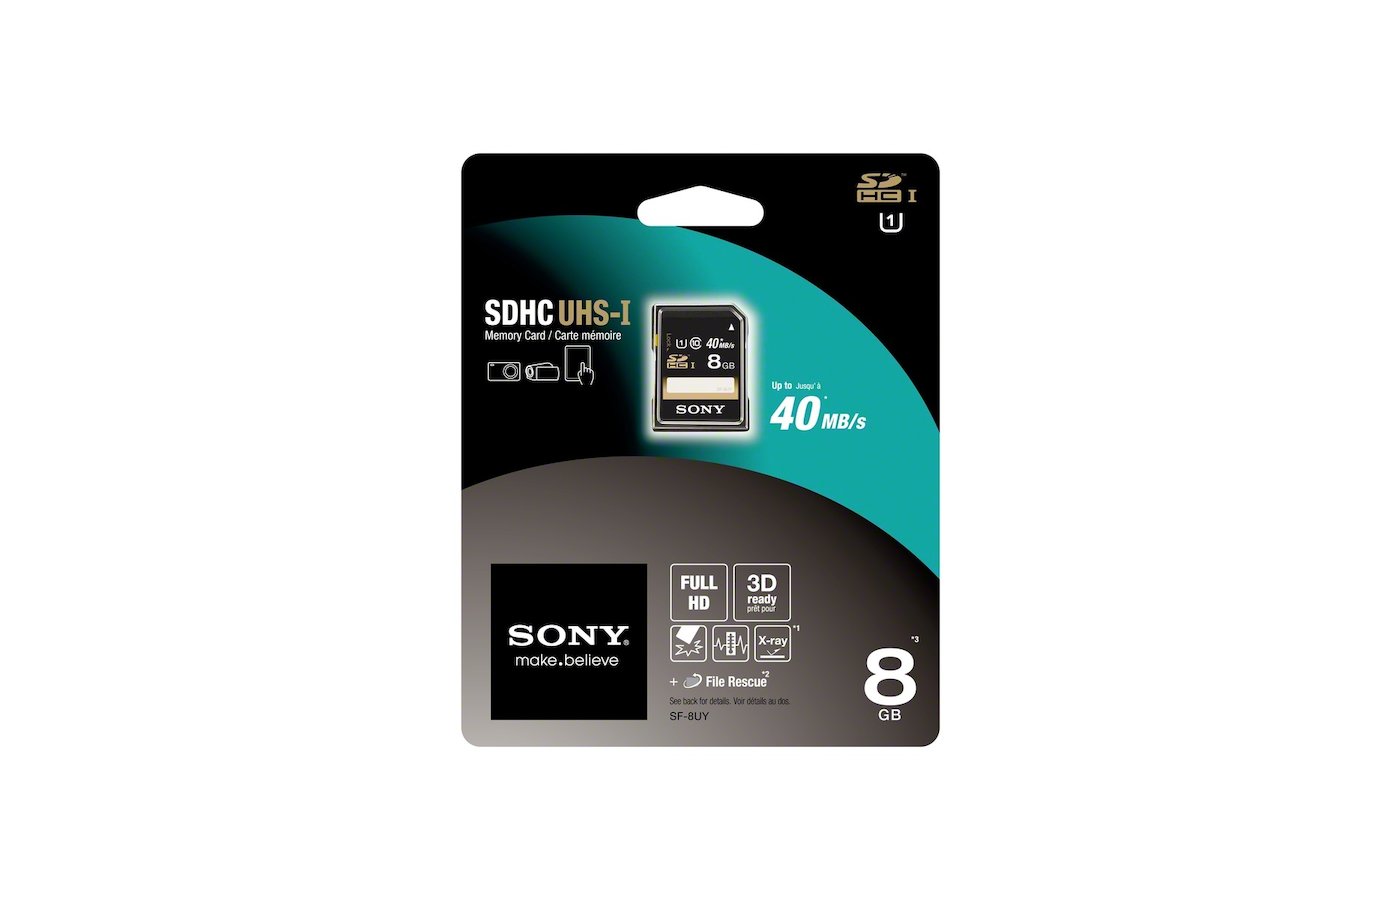 Память sd sdhc. Микро SD HC 1 Sony. Карта памяти Sony SF-8uyt. Карта памяти Sony 32 ГБ 10 класс. MICROSD Sony 16gb.